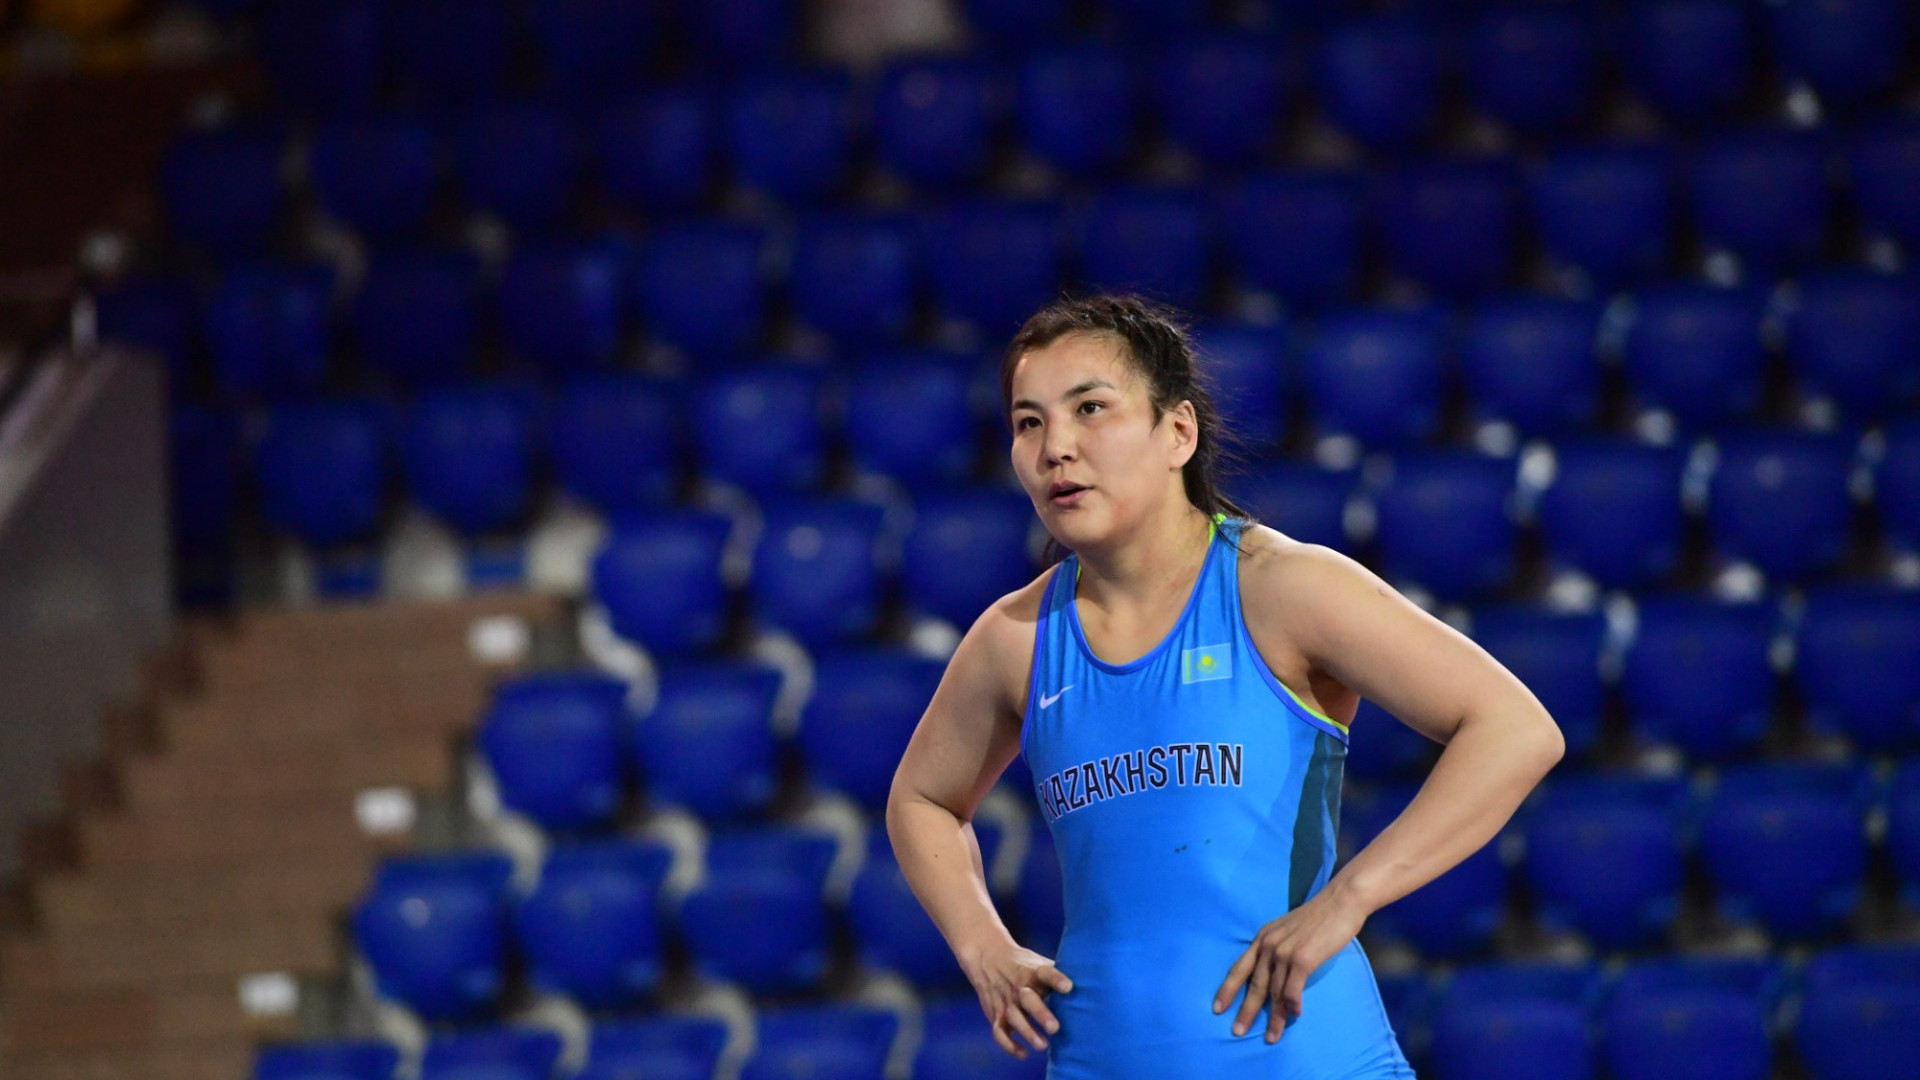 Карагандинка Эльмира Сыздыкова завоевала золото чемпионата Азии по женской борьбе